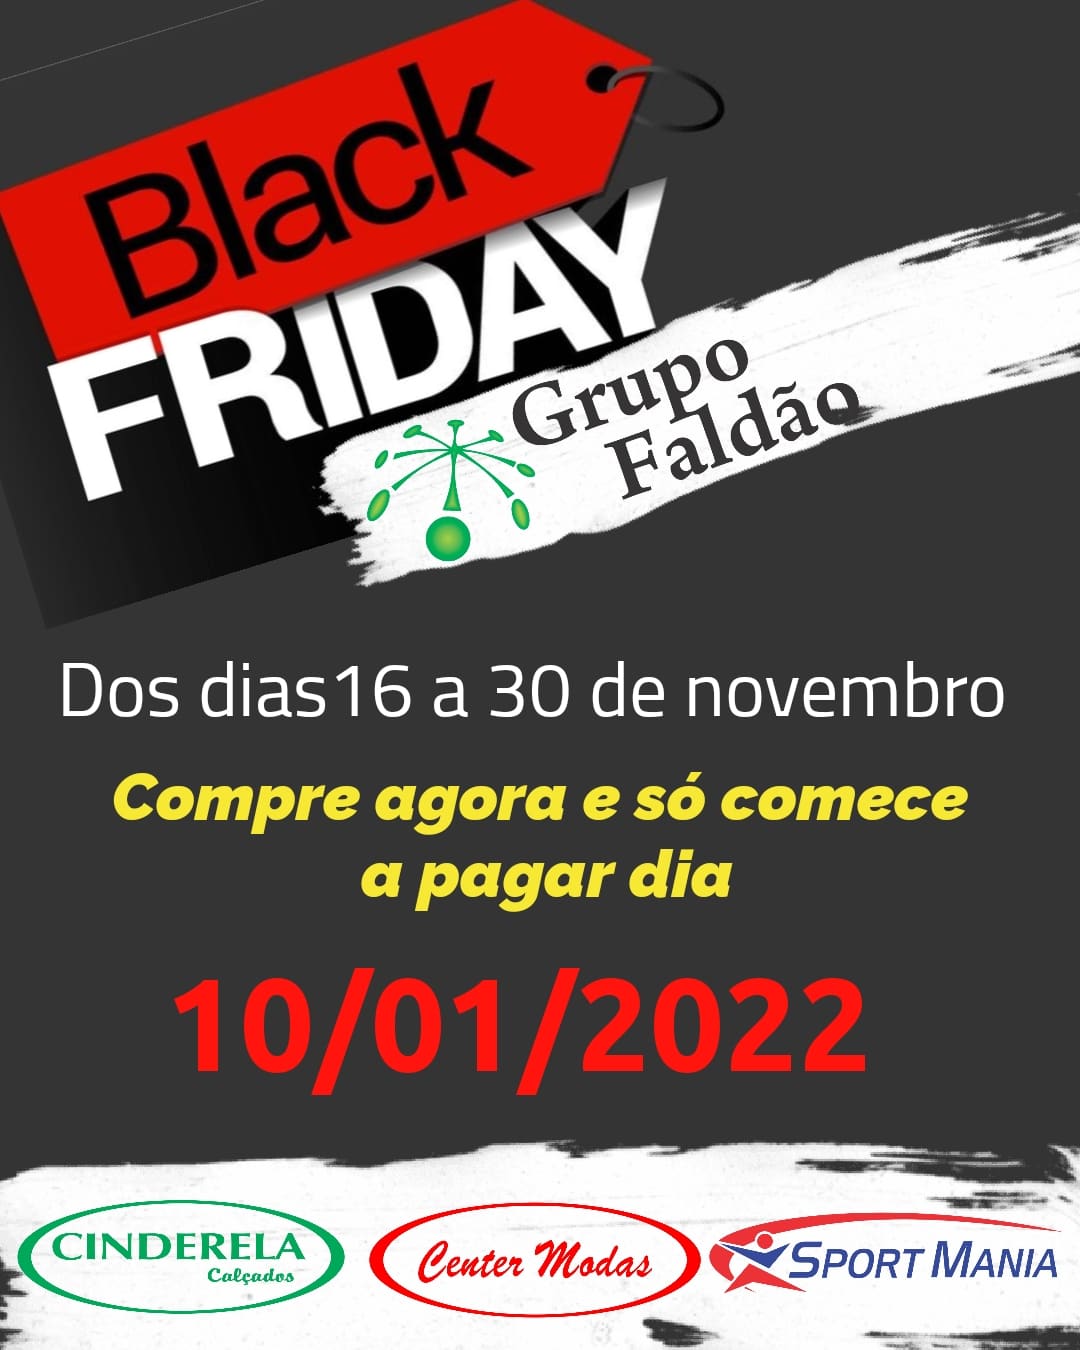 Black Friday Grupo Faldão: compre agora e comece a pagar só em 10 de janeiro